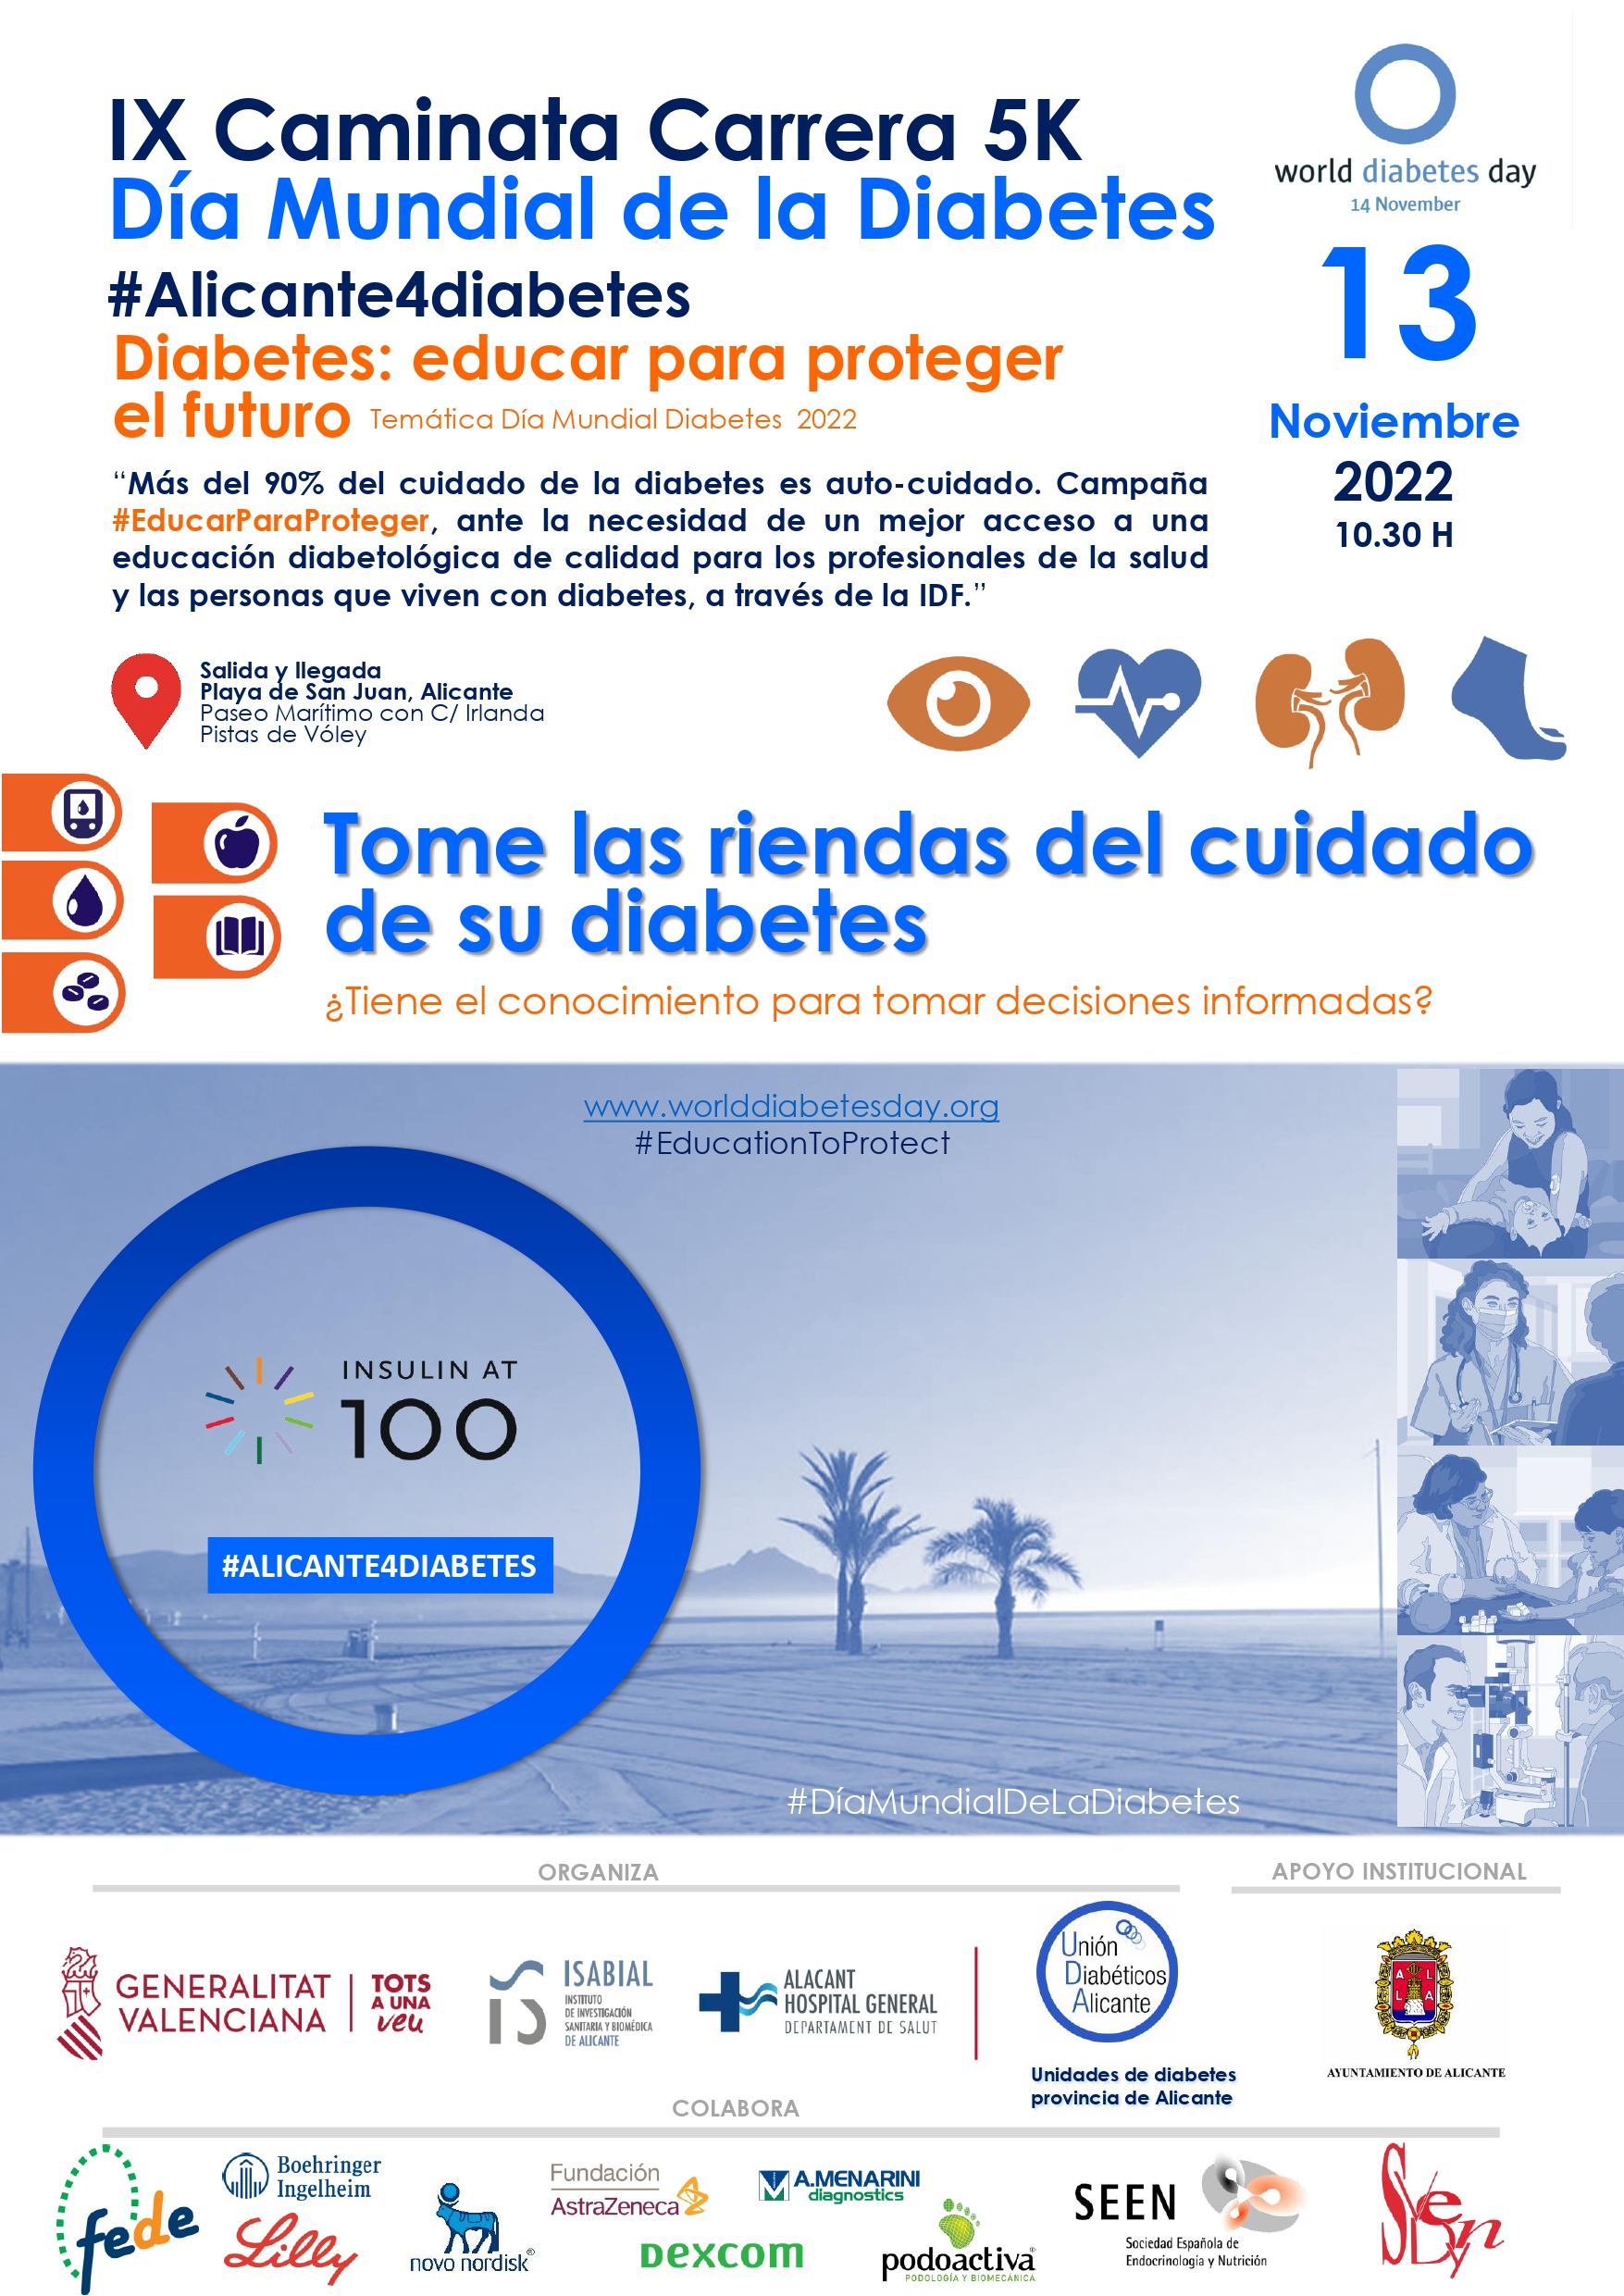 La Caminata Carrera por el Día Mundial de la Diabetes recorrerá la ciudad de Alicante el domingo bajo el lema “Educar para proteger el futuro”